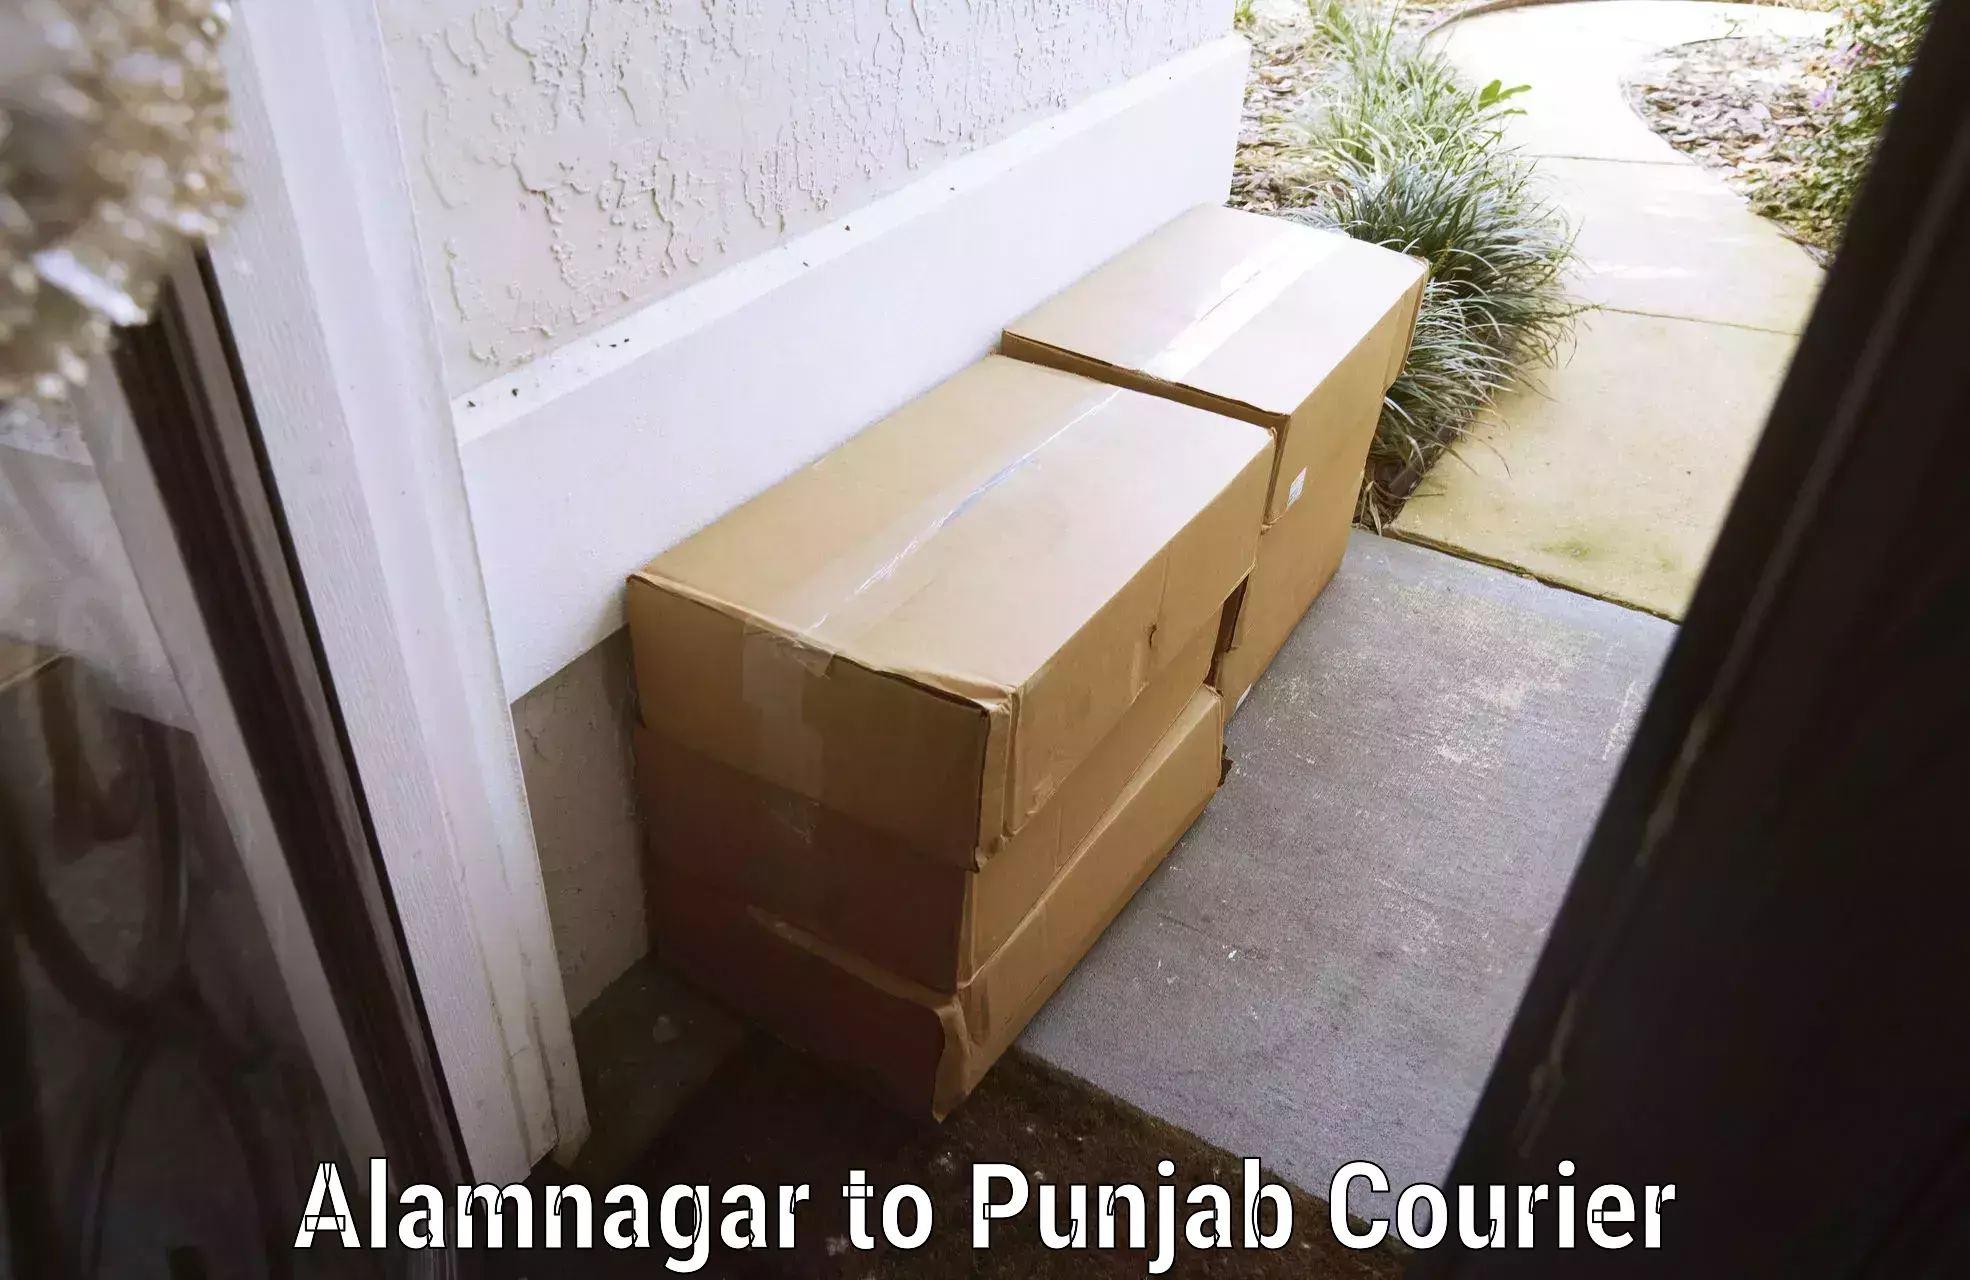 Baggage delivery management Alamnagar to Zirakpur